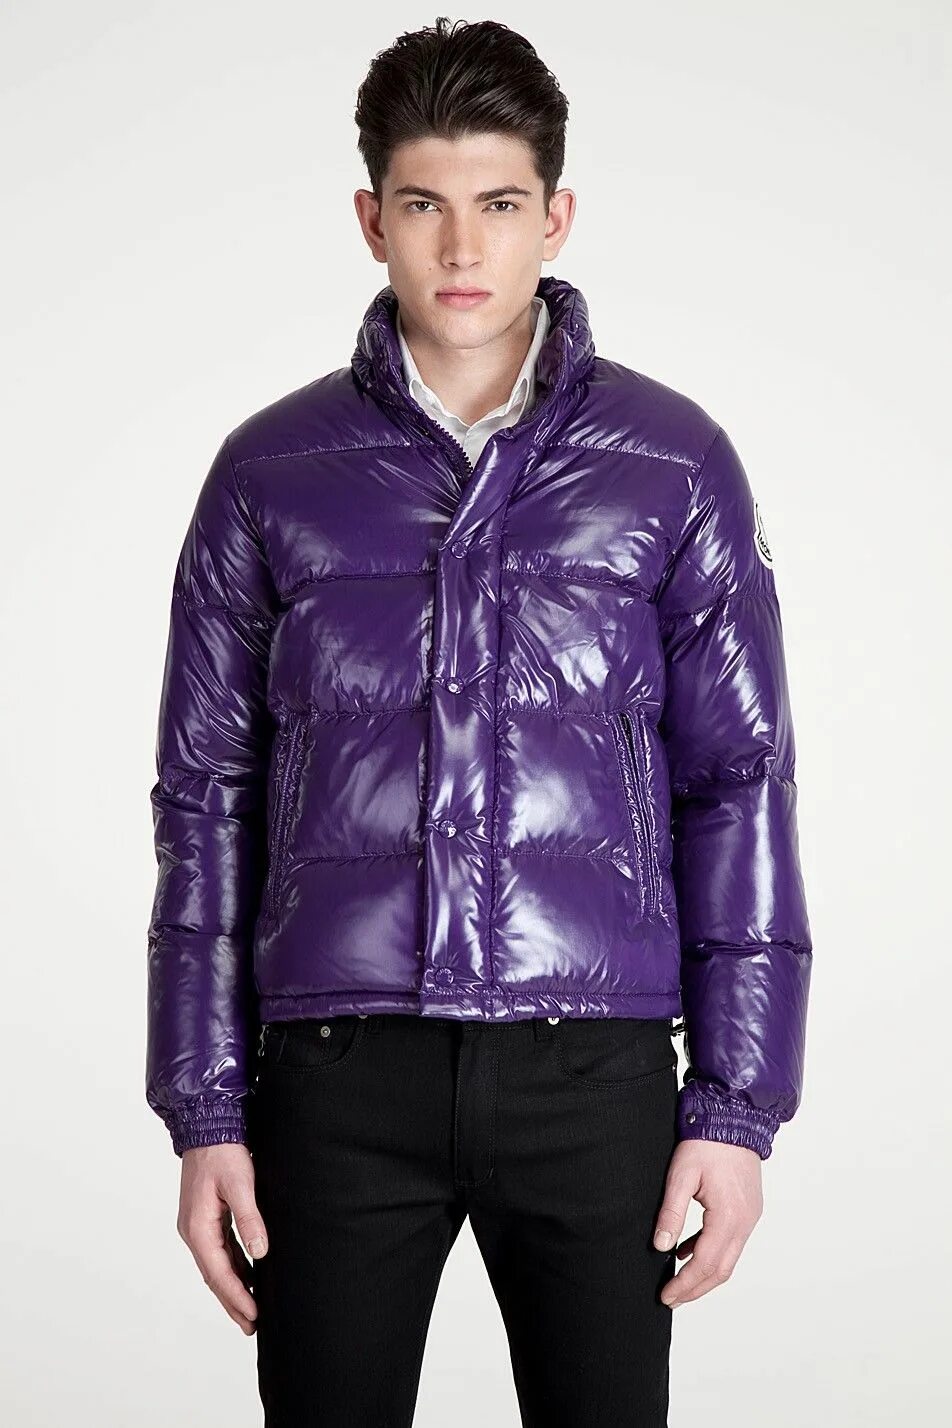 Мужская фиолетовая куртка. Куртка монклер мужская Весенняя. Куртка монклер фиолетовая. Moncler куртка мужская осенняя. Куртка монклер фиолетовая мужская.